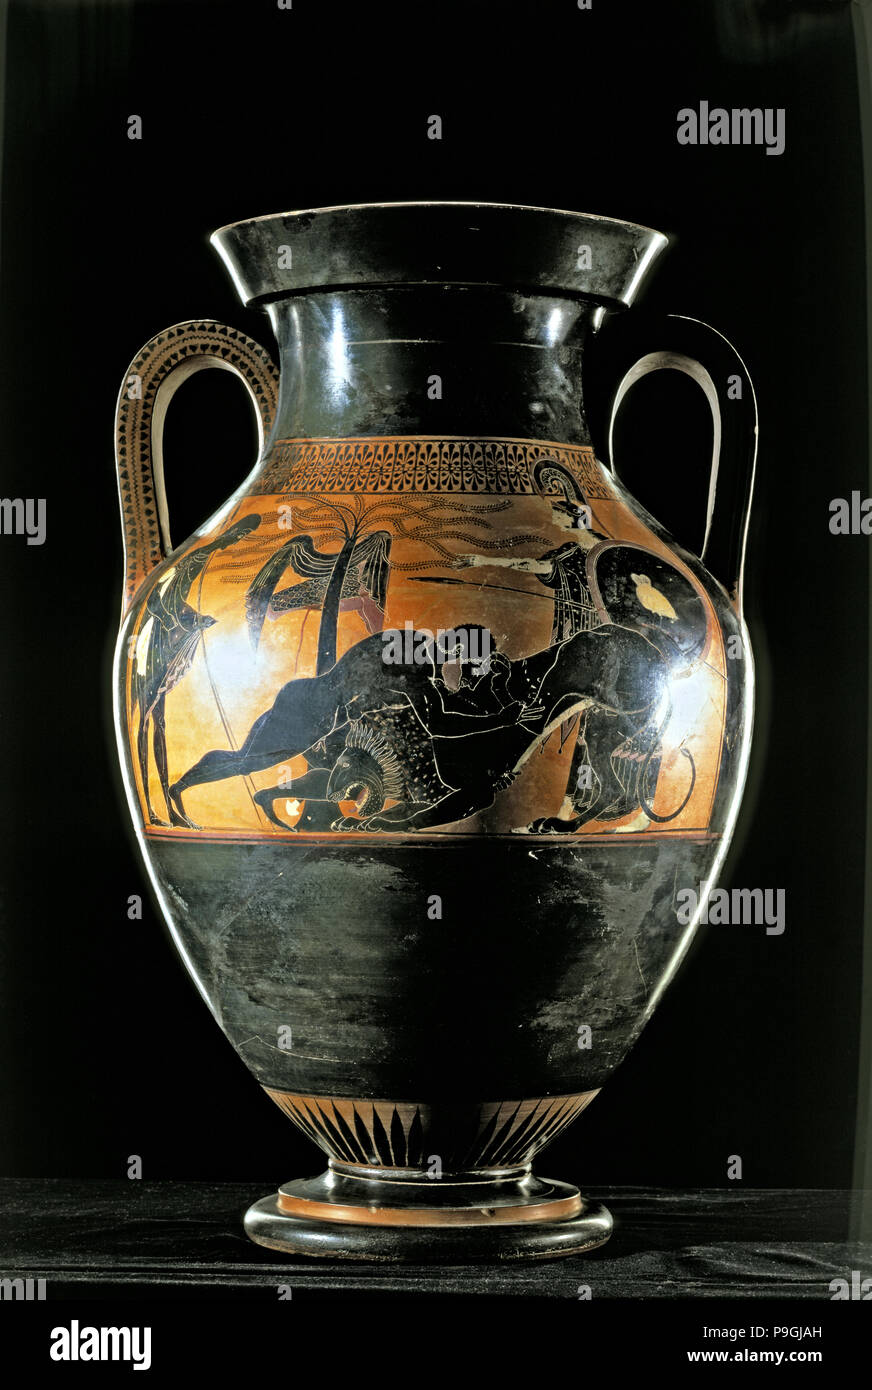 Herakles im Kampf gegen die Löwen von Nemea', Dachboden, schwarz - Abbildung Amphore aus Vulci. Stockfoto